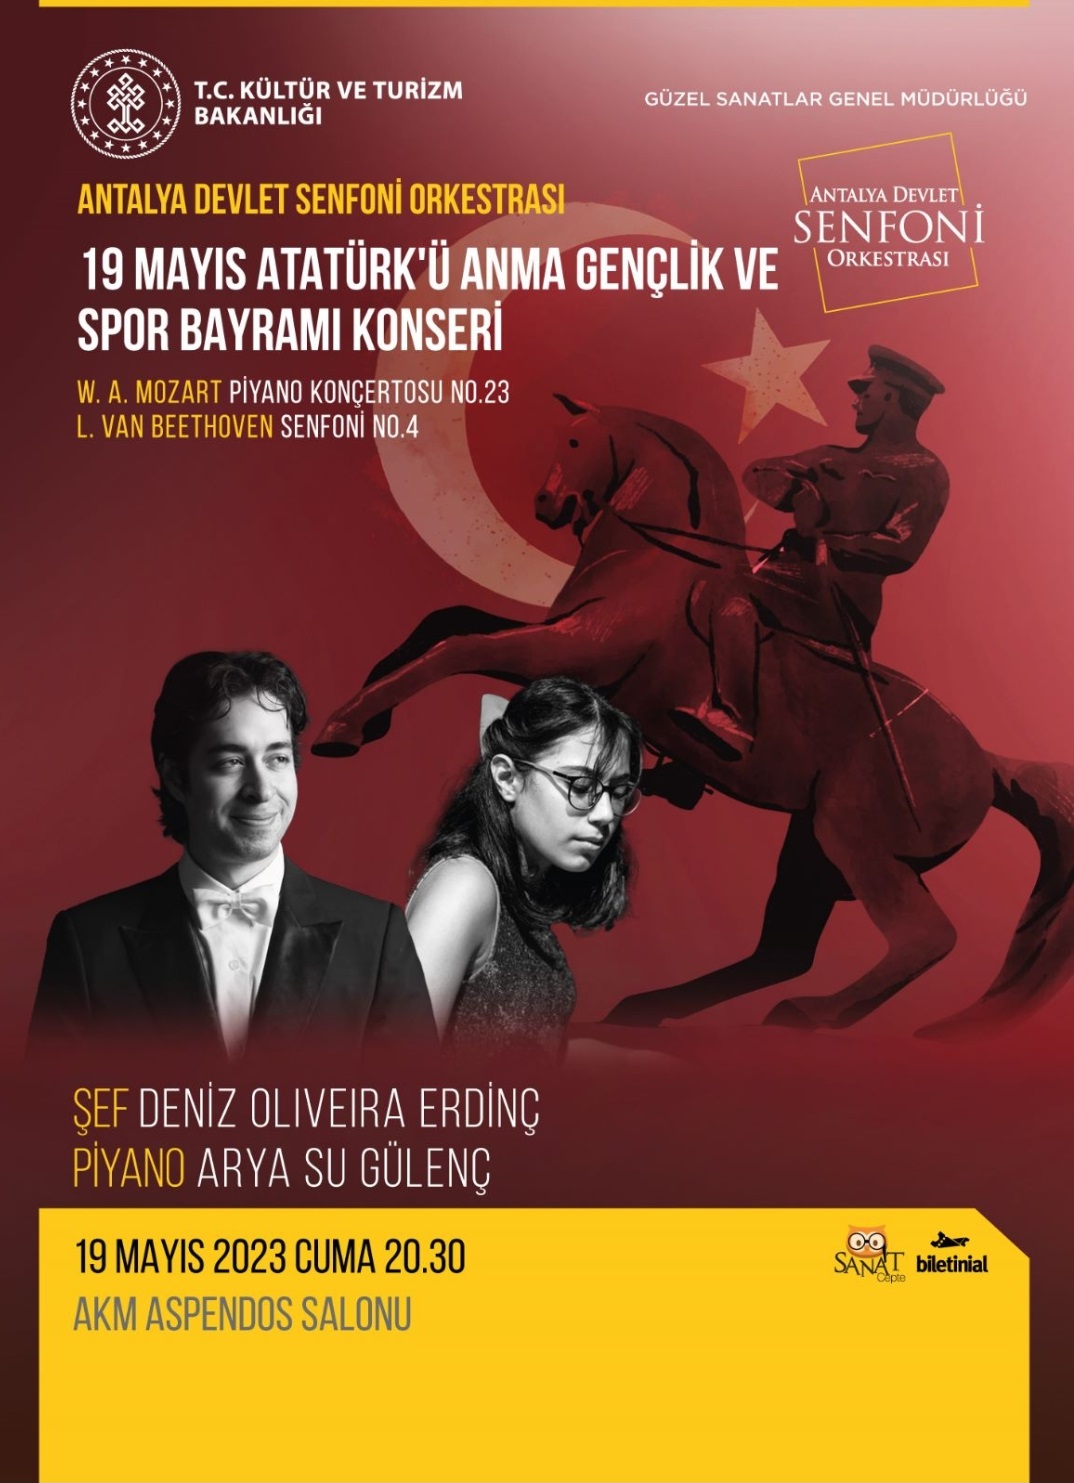 19 Mayıs Atatürk'ü Anma Gençlik ve Spor Bayramı Konseri - Antalya Devlet Senfoni Orkestrası